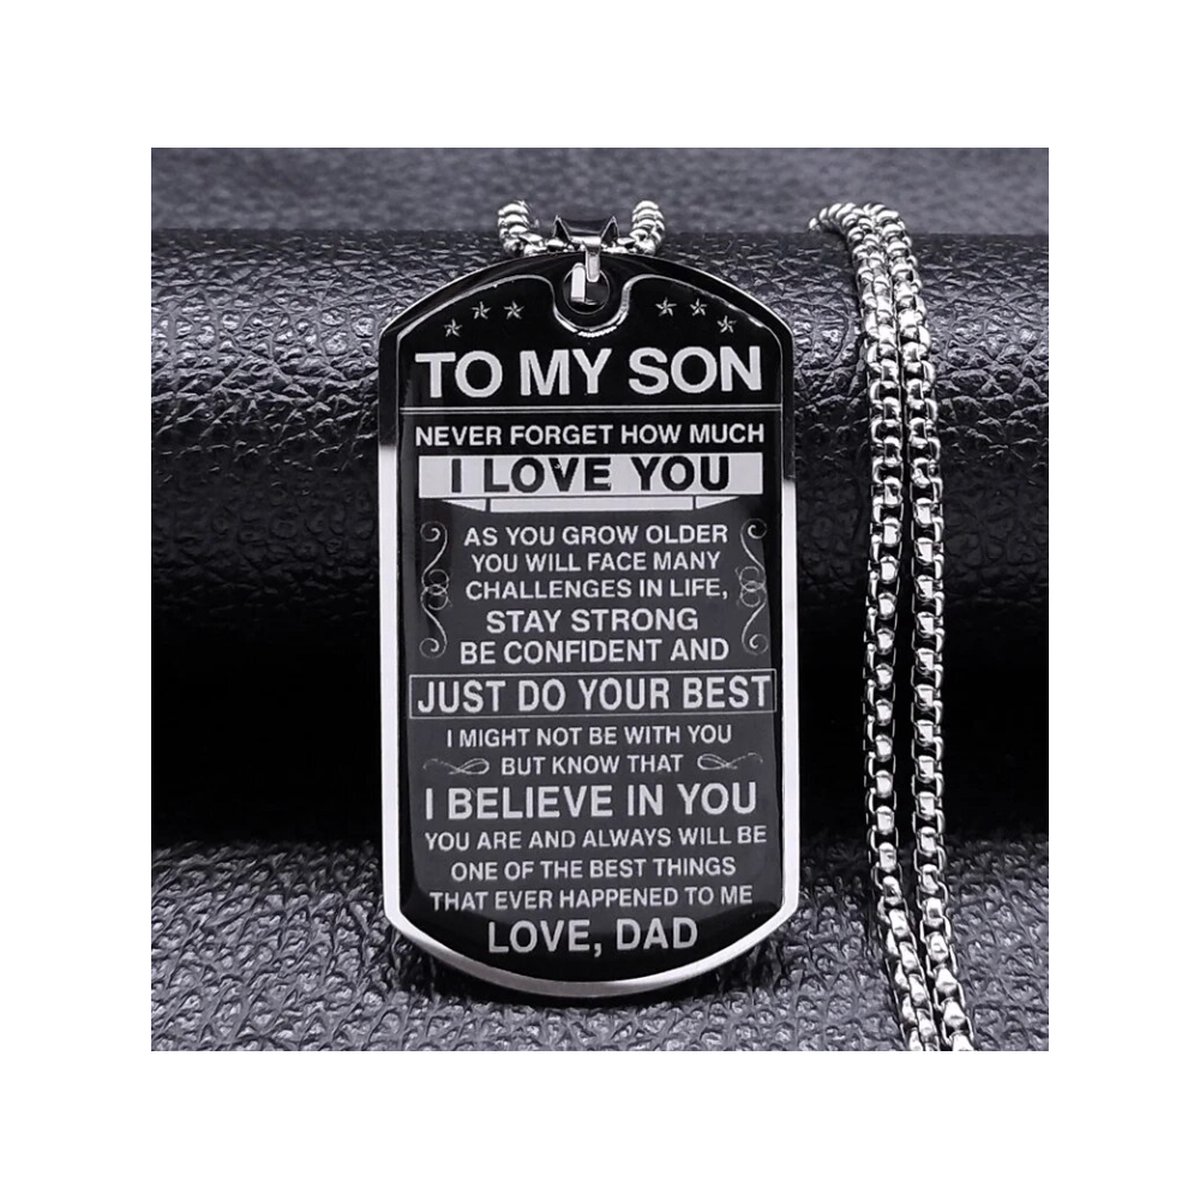 Zoëies voor mijn zoon ketting zilverkleurig - vader - familie - to my son - geloof in jou